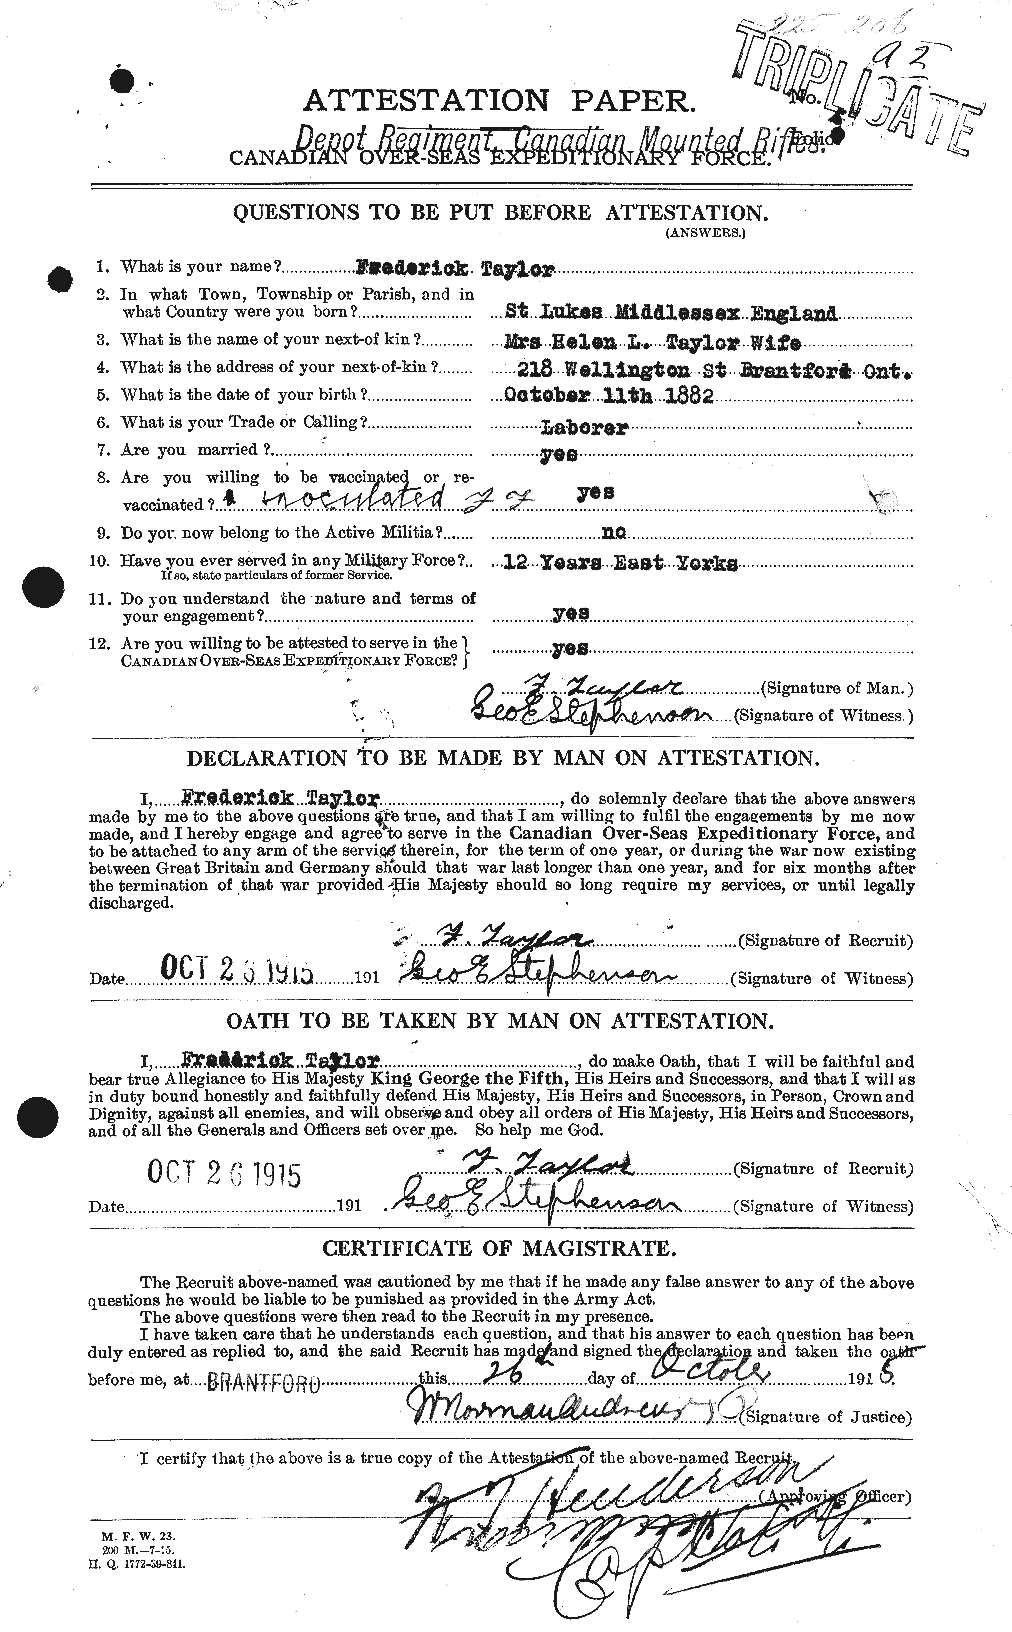 Dossiers du Personnel de la Première Guerre mondiale - CEC 625781a